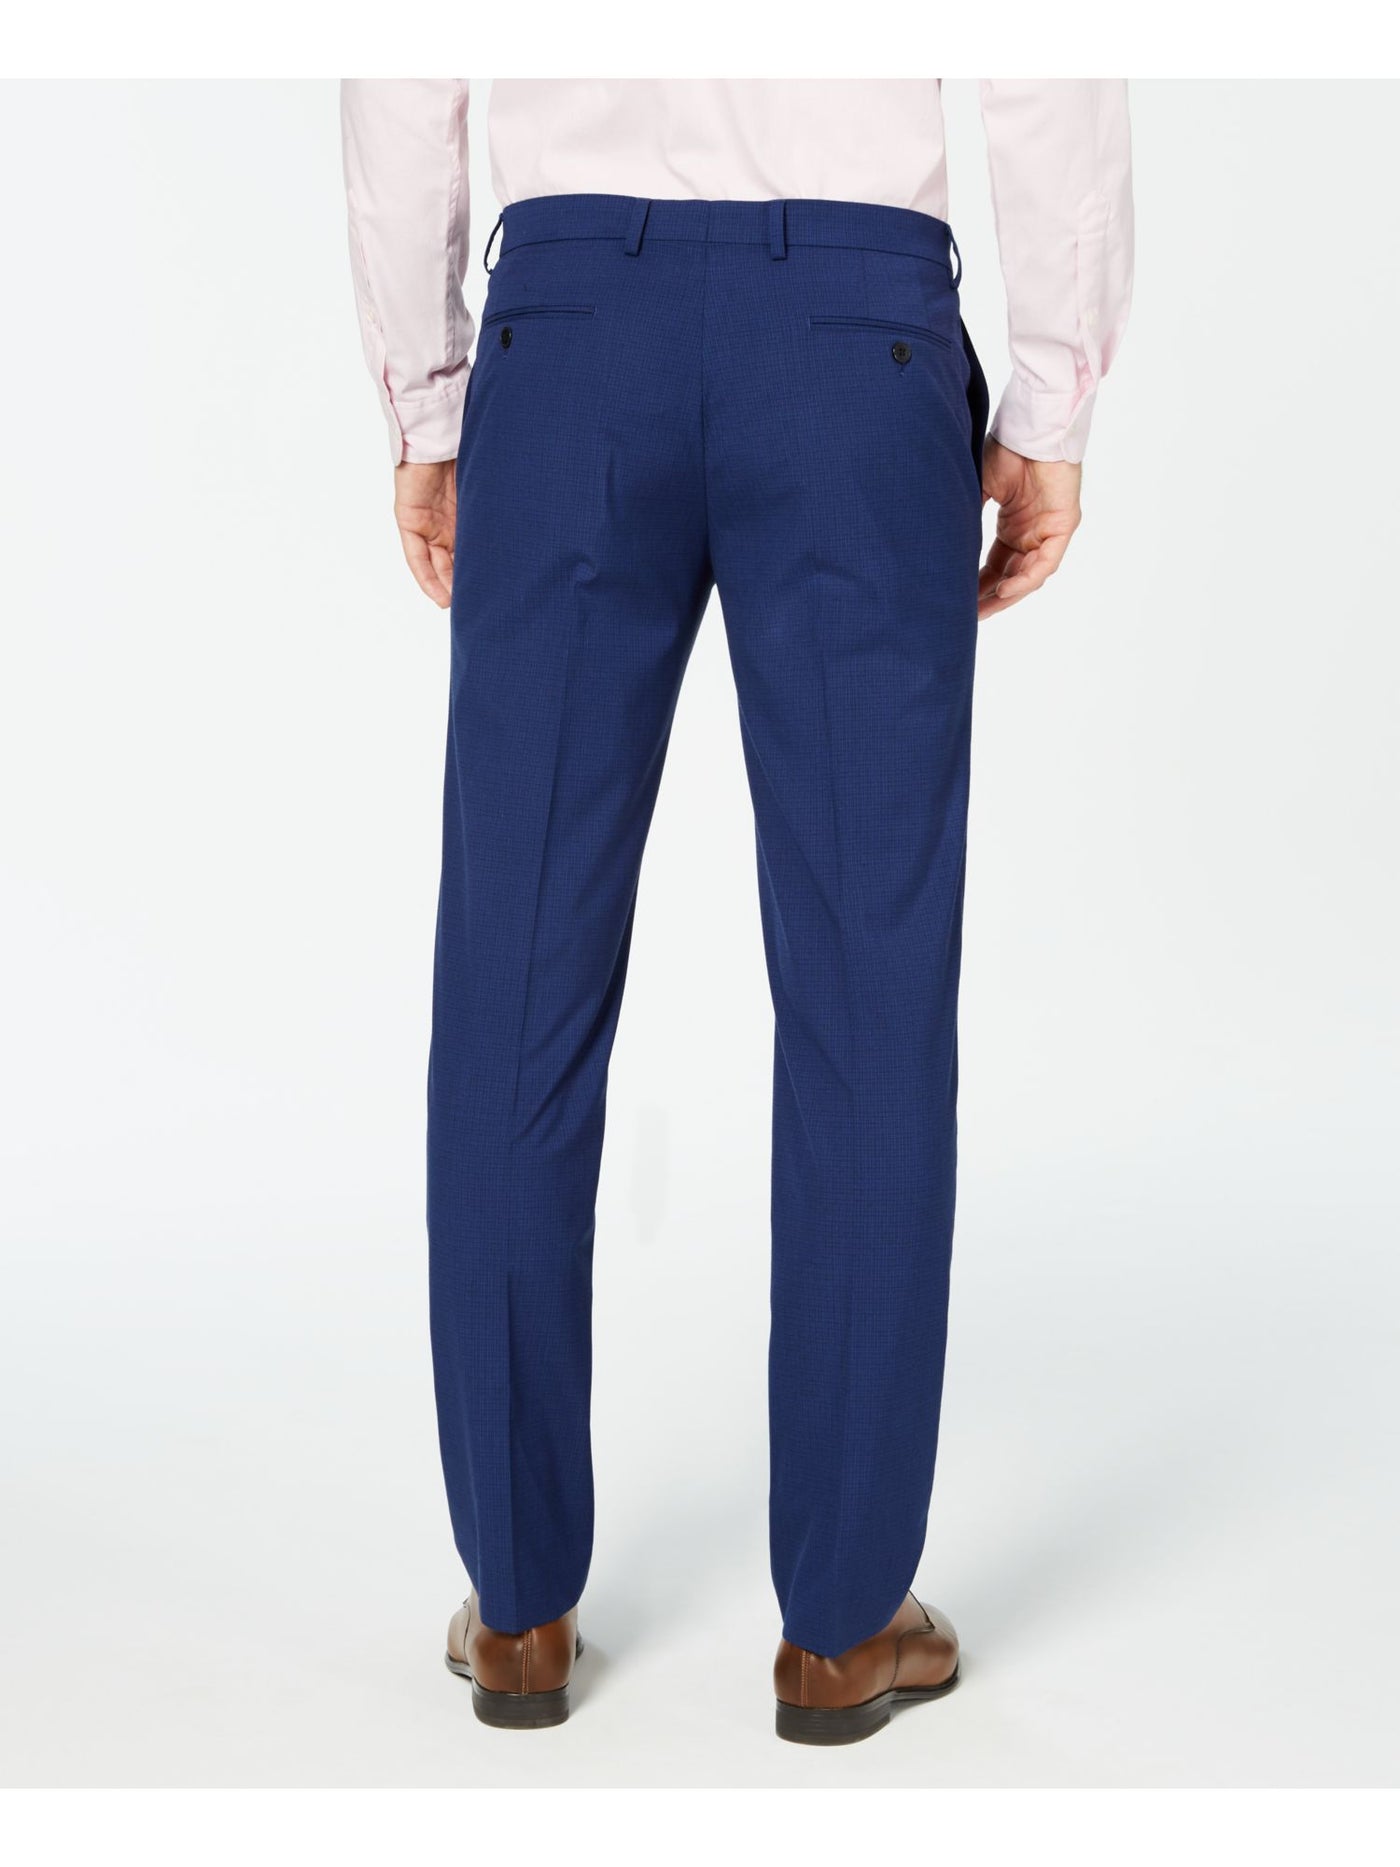 VINCE CAMUTO Mens Blue Flat Front, Slim Fit Pants 42W/ 30L